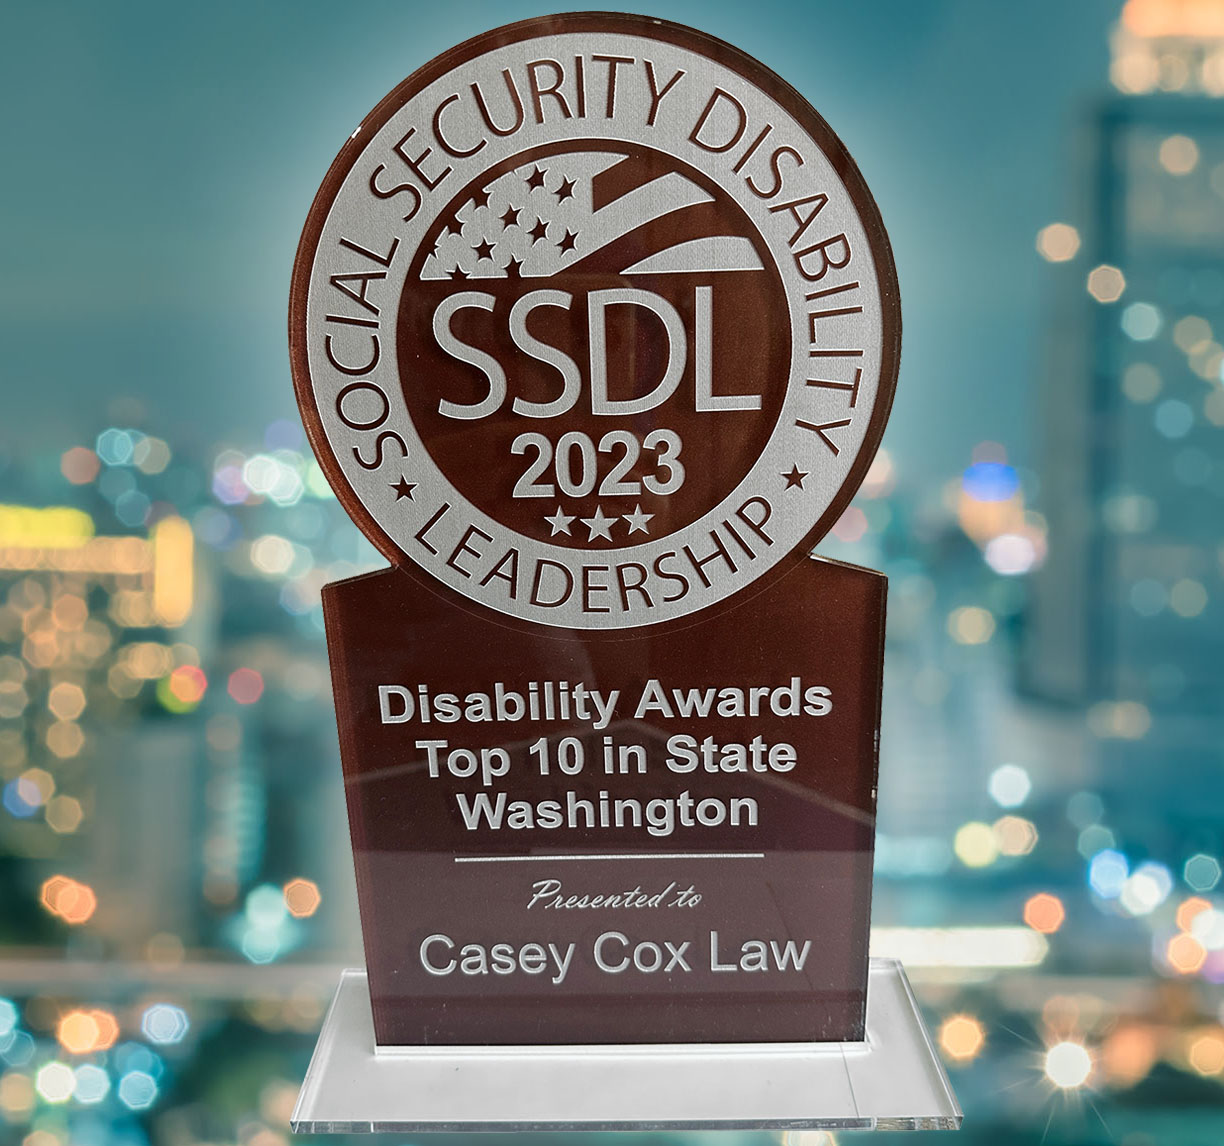 Social Security Disability Leadership 2023 Award